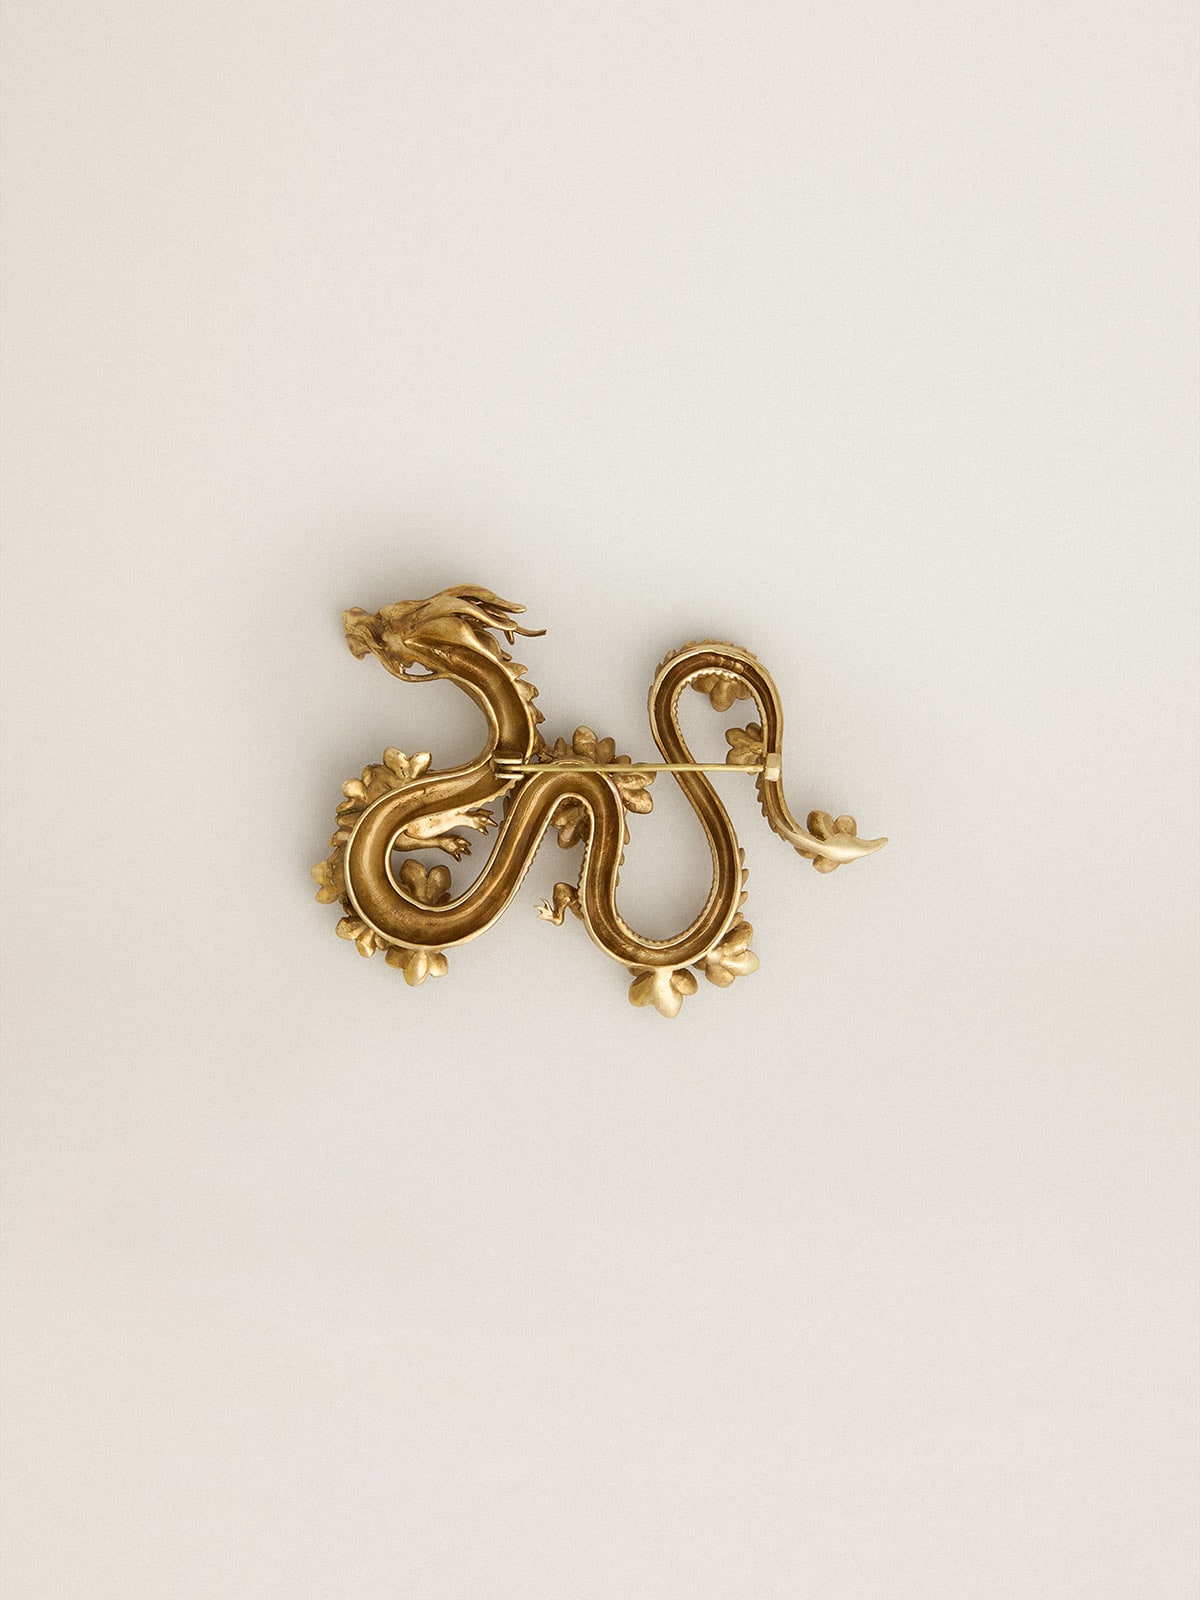 Golden Goose - Broche CNY color oro antiguo con forma de dragón in 